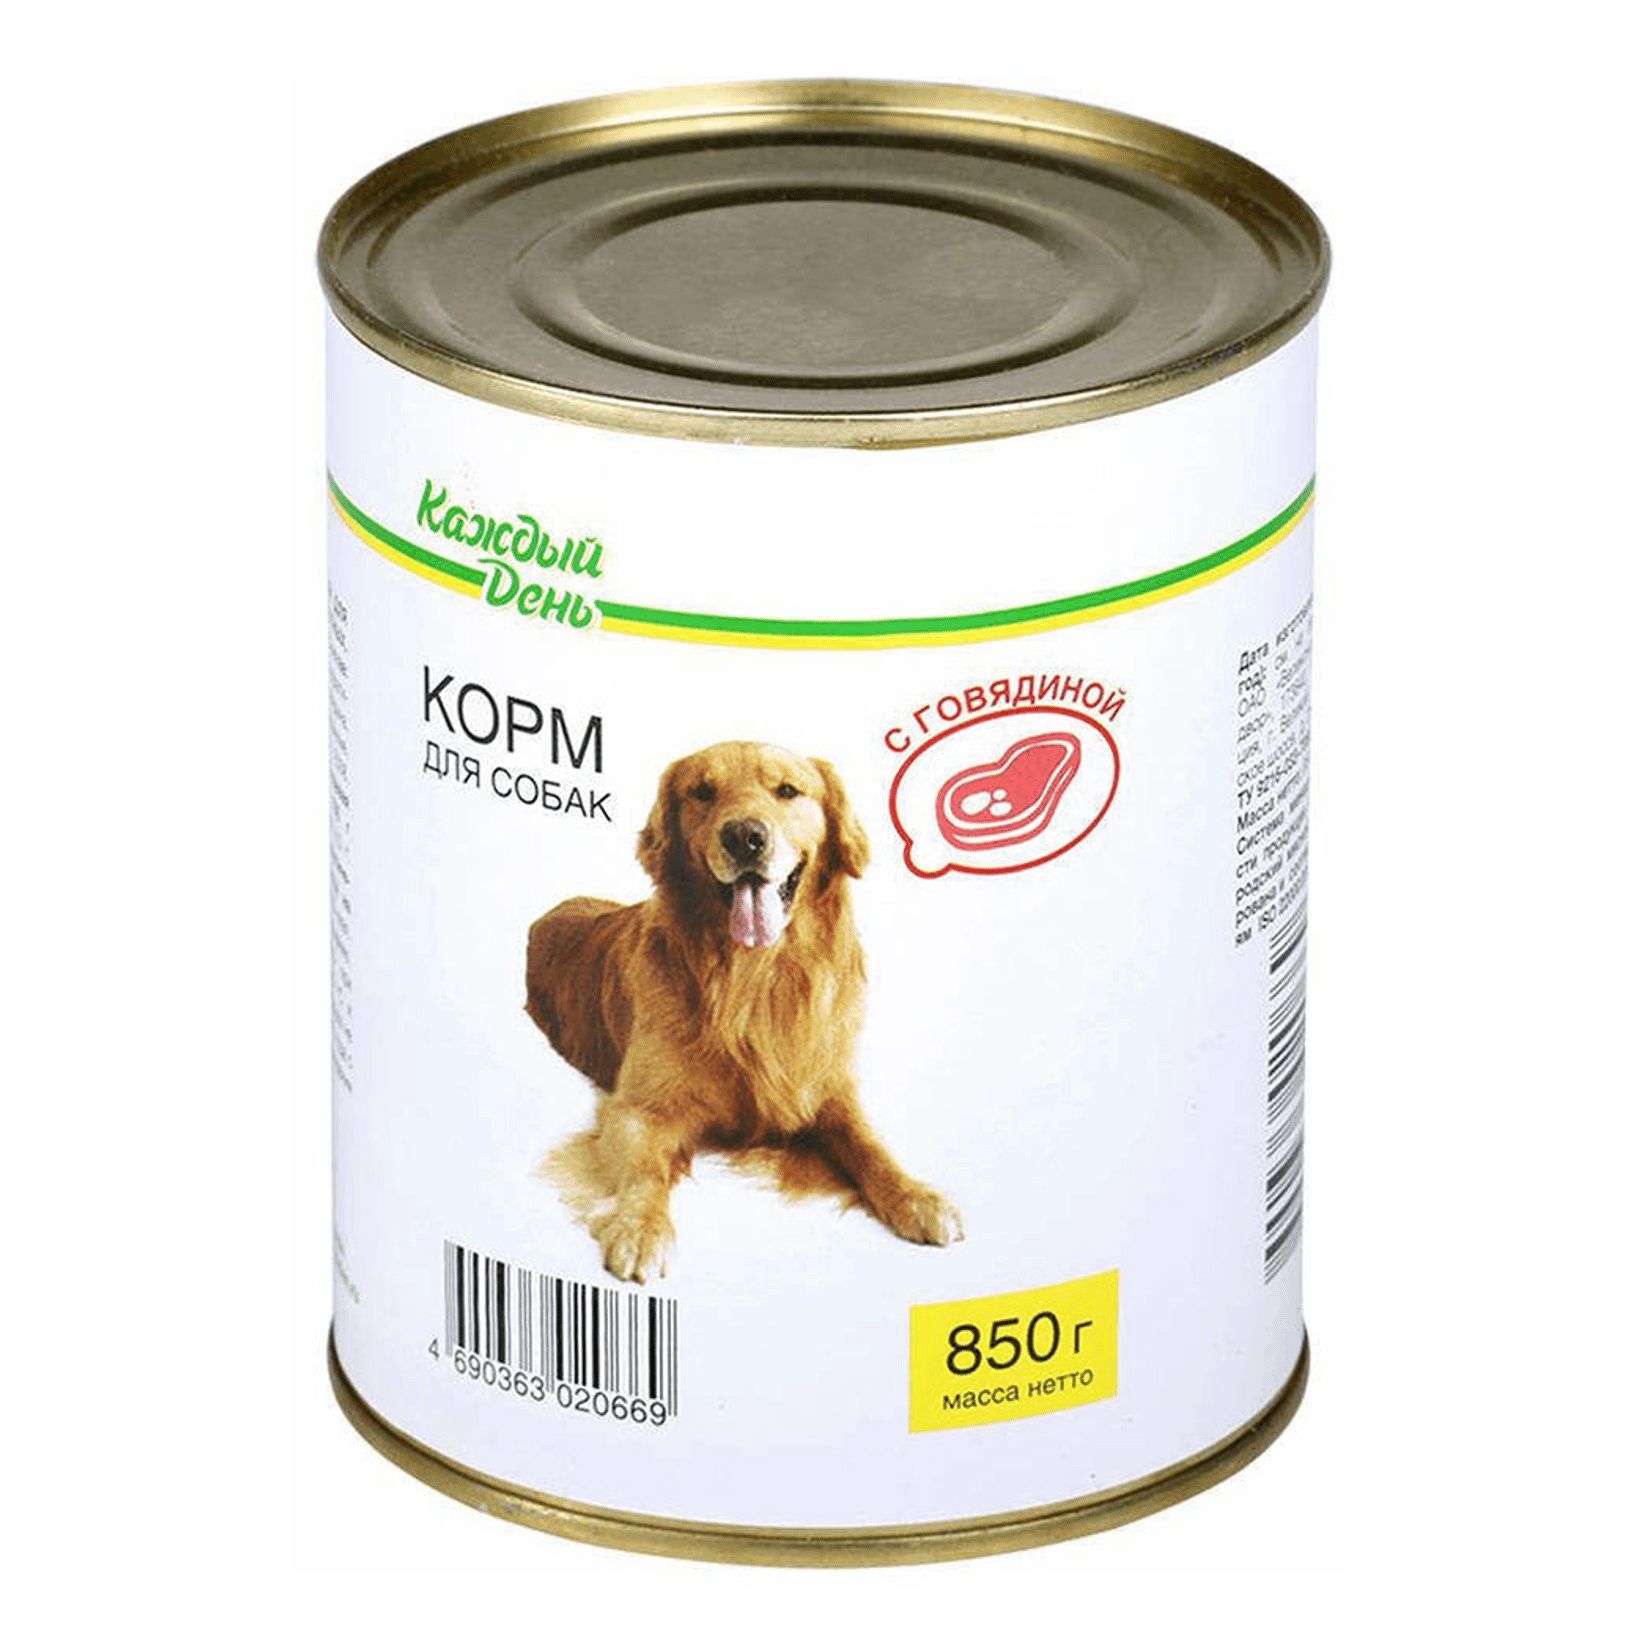 Корм для собак каждый день консервы для собак с говядиной (0.85 кг) 1 шт.. Корм для собак darsi (0.85 кг) 1 шт. Консервы для собак: говядина и рис. Корм для собак Rocky (0.25 кг) 1 шт. Паштет с говядиной для собак. Корм для собак Aras (0.82 кг) 1 шт. Premium select для собак - говядина с овощами и рисом.